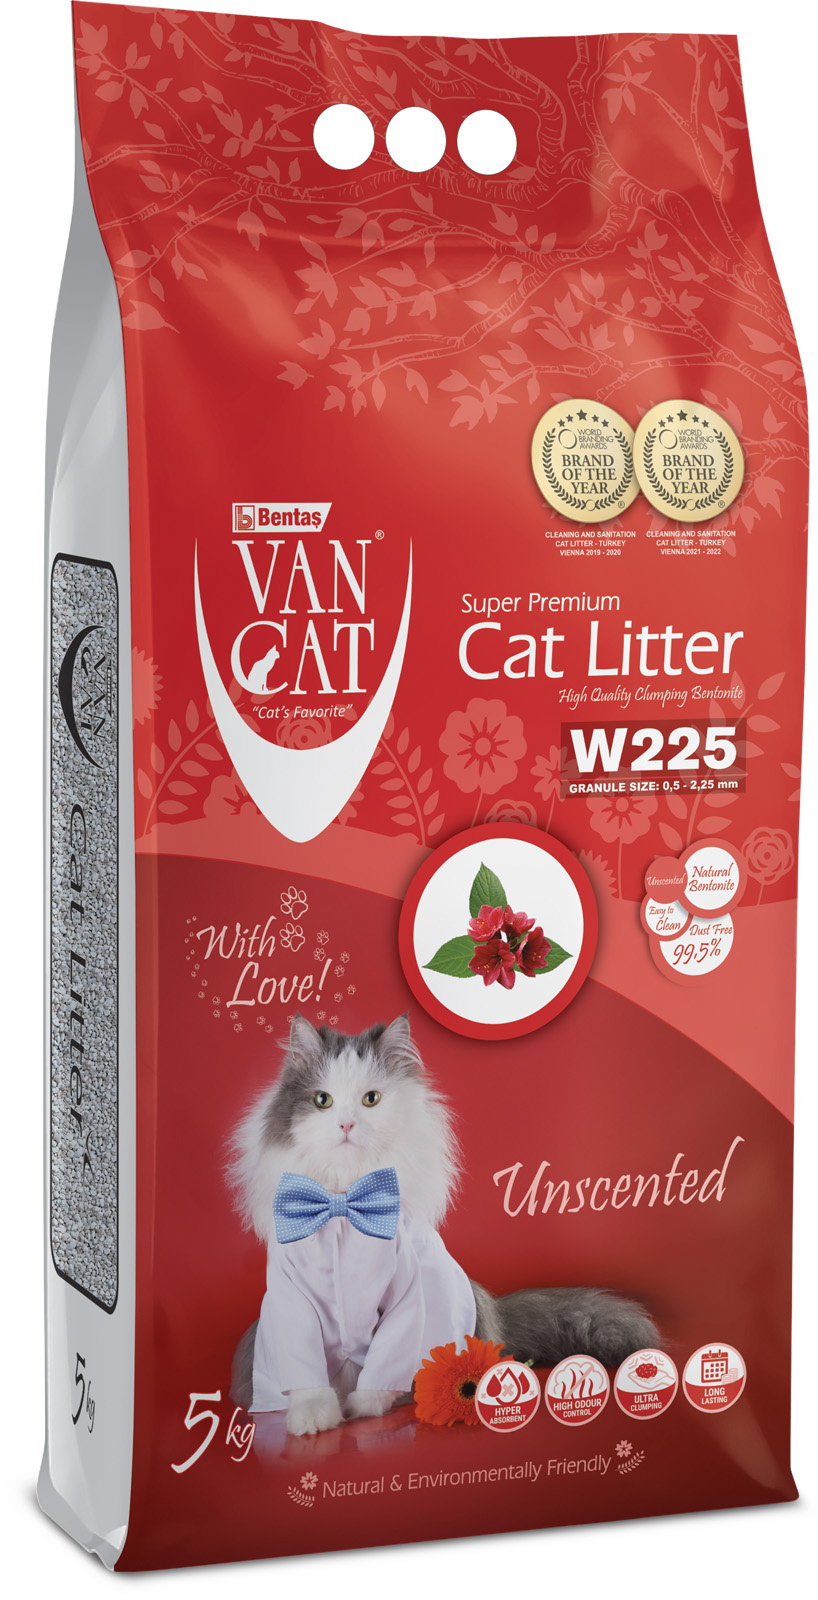 Van Cat Van Cat комкующийся наполнитель 100% натуральный, без пыли, пакет (5 кг) van cat van cat комкующийся наполнитель с антибактериальным эффектом 6л коробка clinic ultra sensitive 5 1 кг